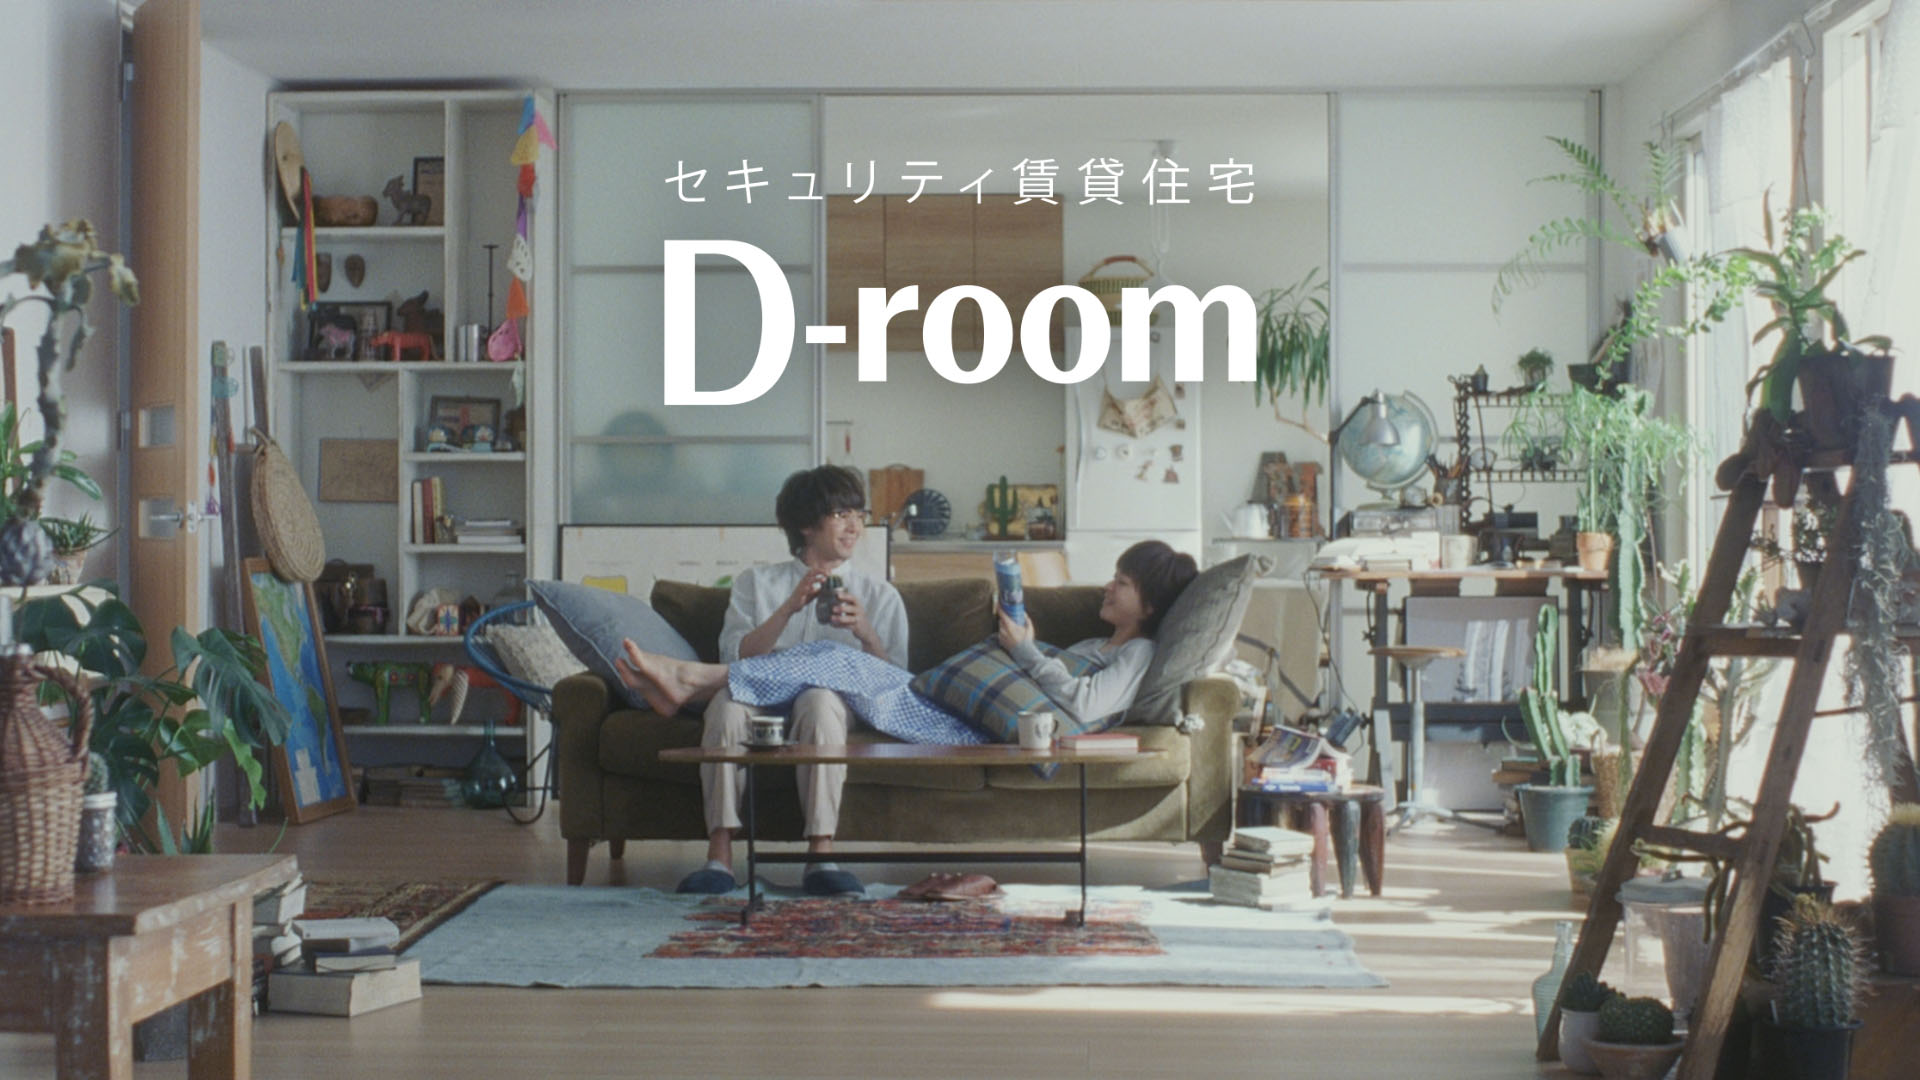 ダイワハウスの新cm D Room はじまり 篇の放映を開始しました 大和ハウス工業株式会社のプレスリリース